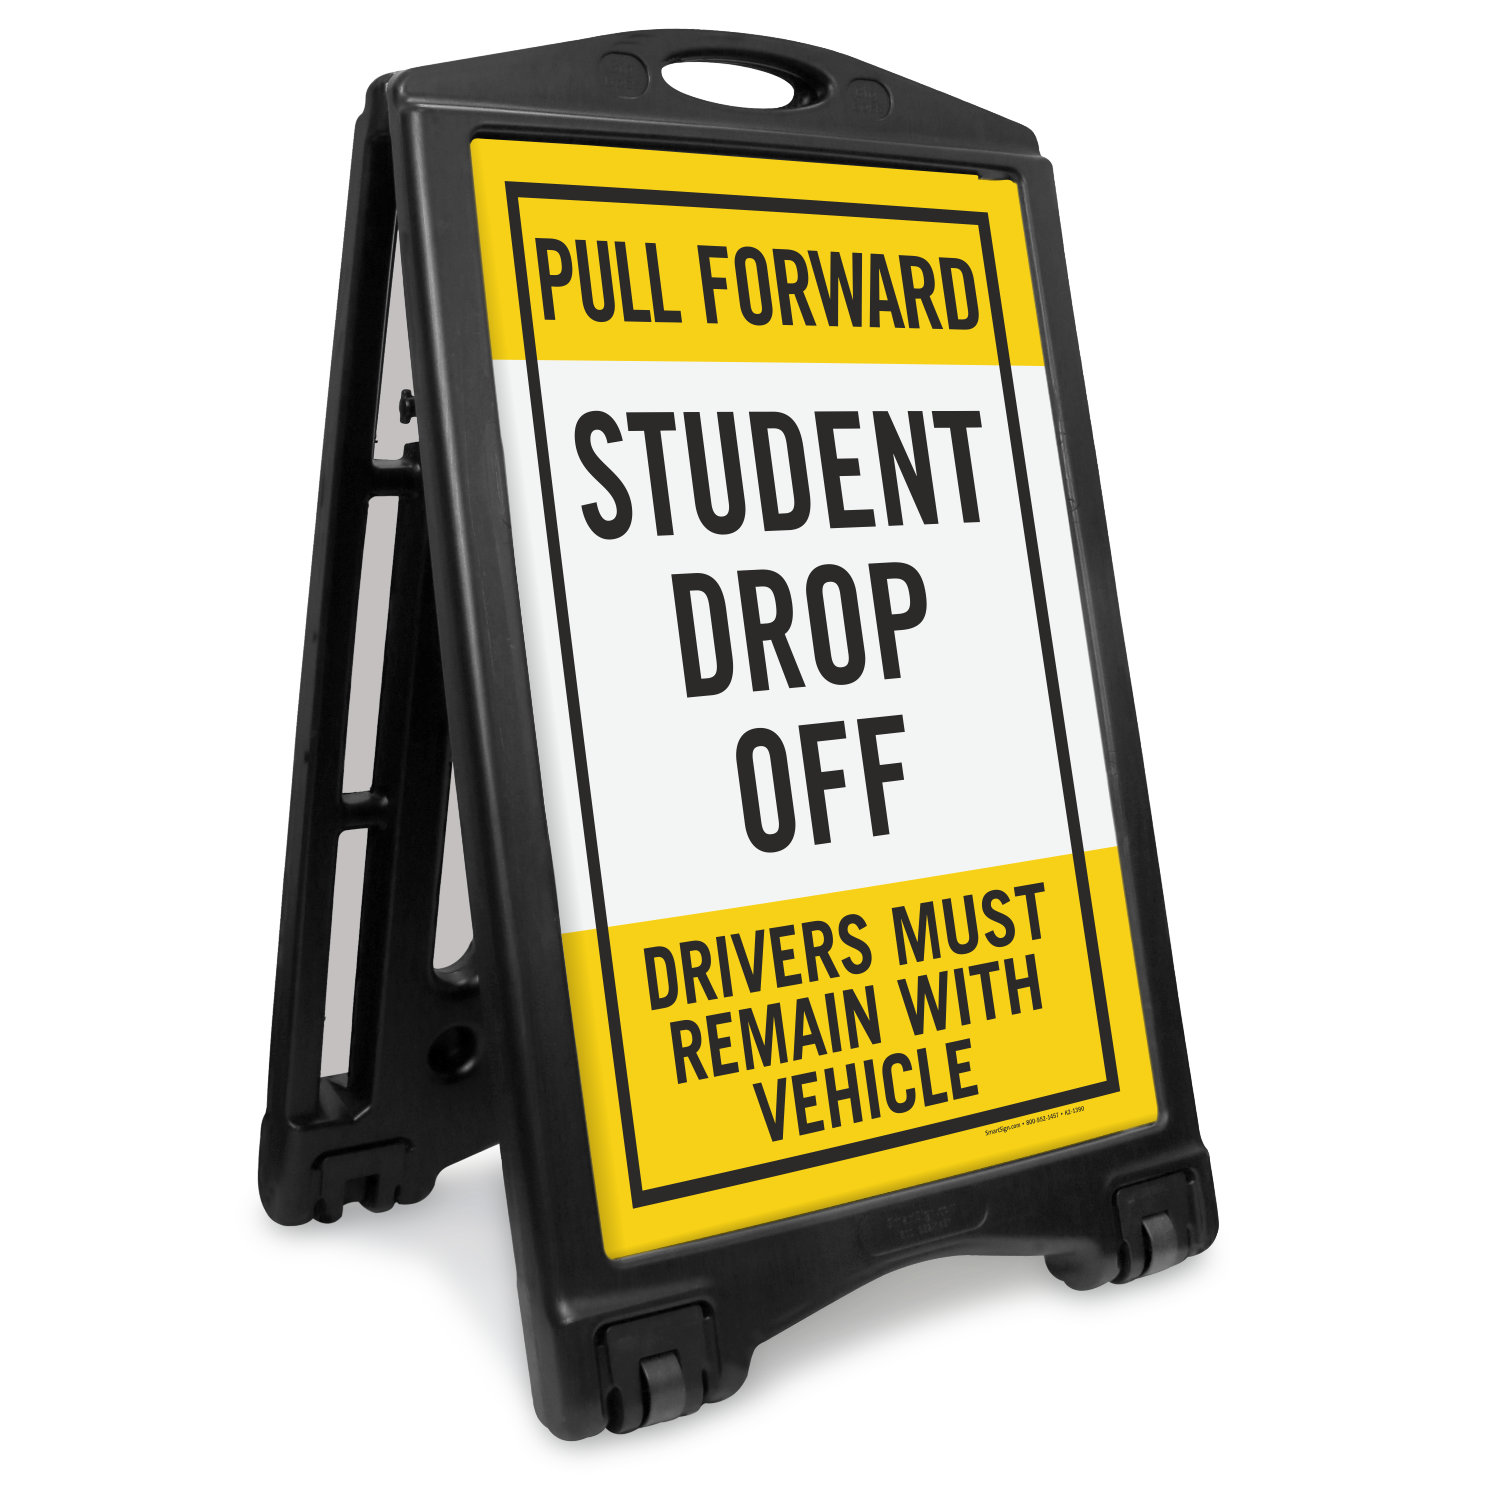 Student Drop-Off Pick-Up Begins Portable Sidewalk Sign